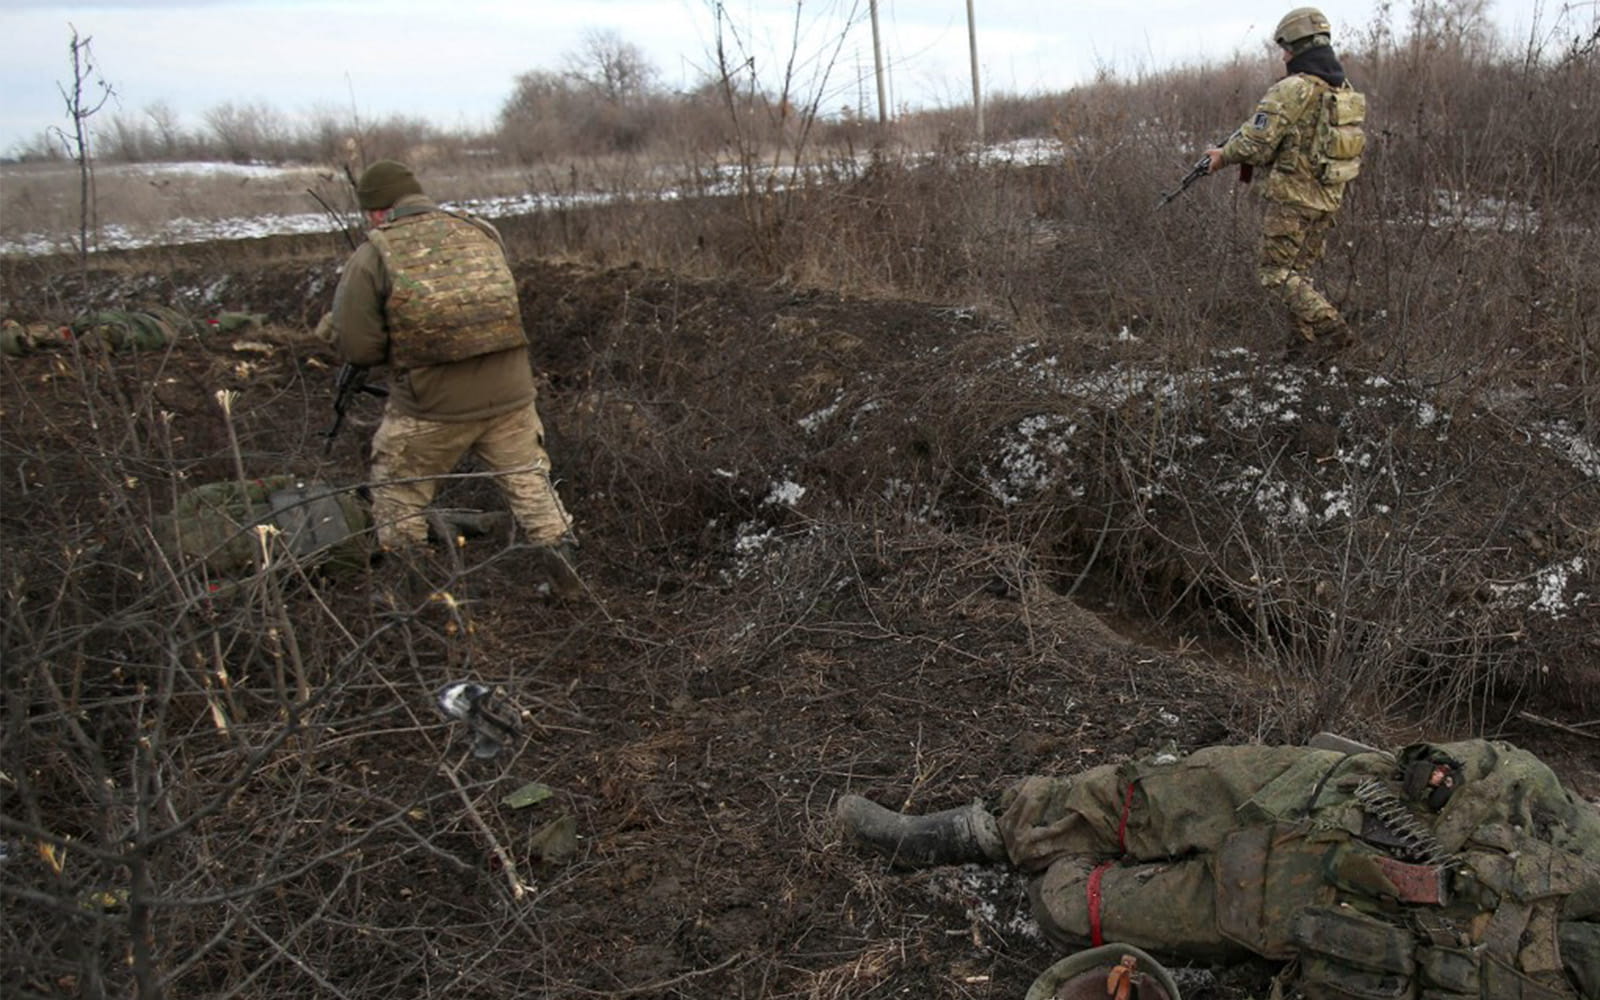 Tropas ucranianas pasan junto a un cadáver, tras los combates contra las fuerzas rusas y los separatistas respaldados por Rusia, cerca del pueblo de Zolote, en la región de Lugansk, el 6 de marzo de 2022. (Anatolii Stepanov/AFP)